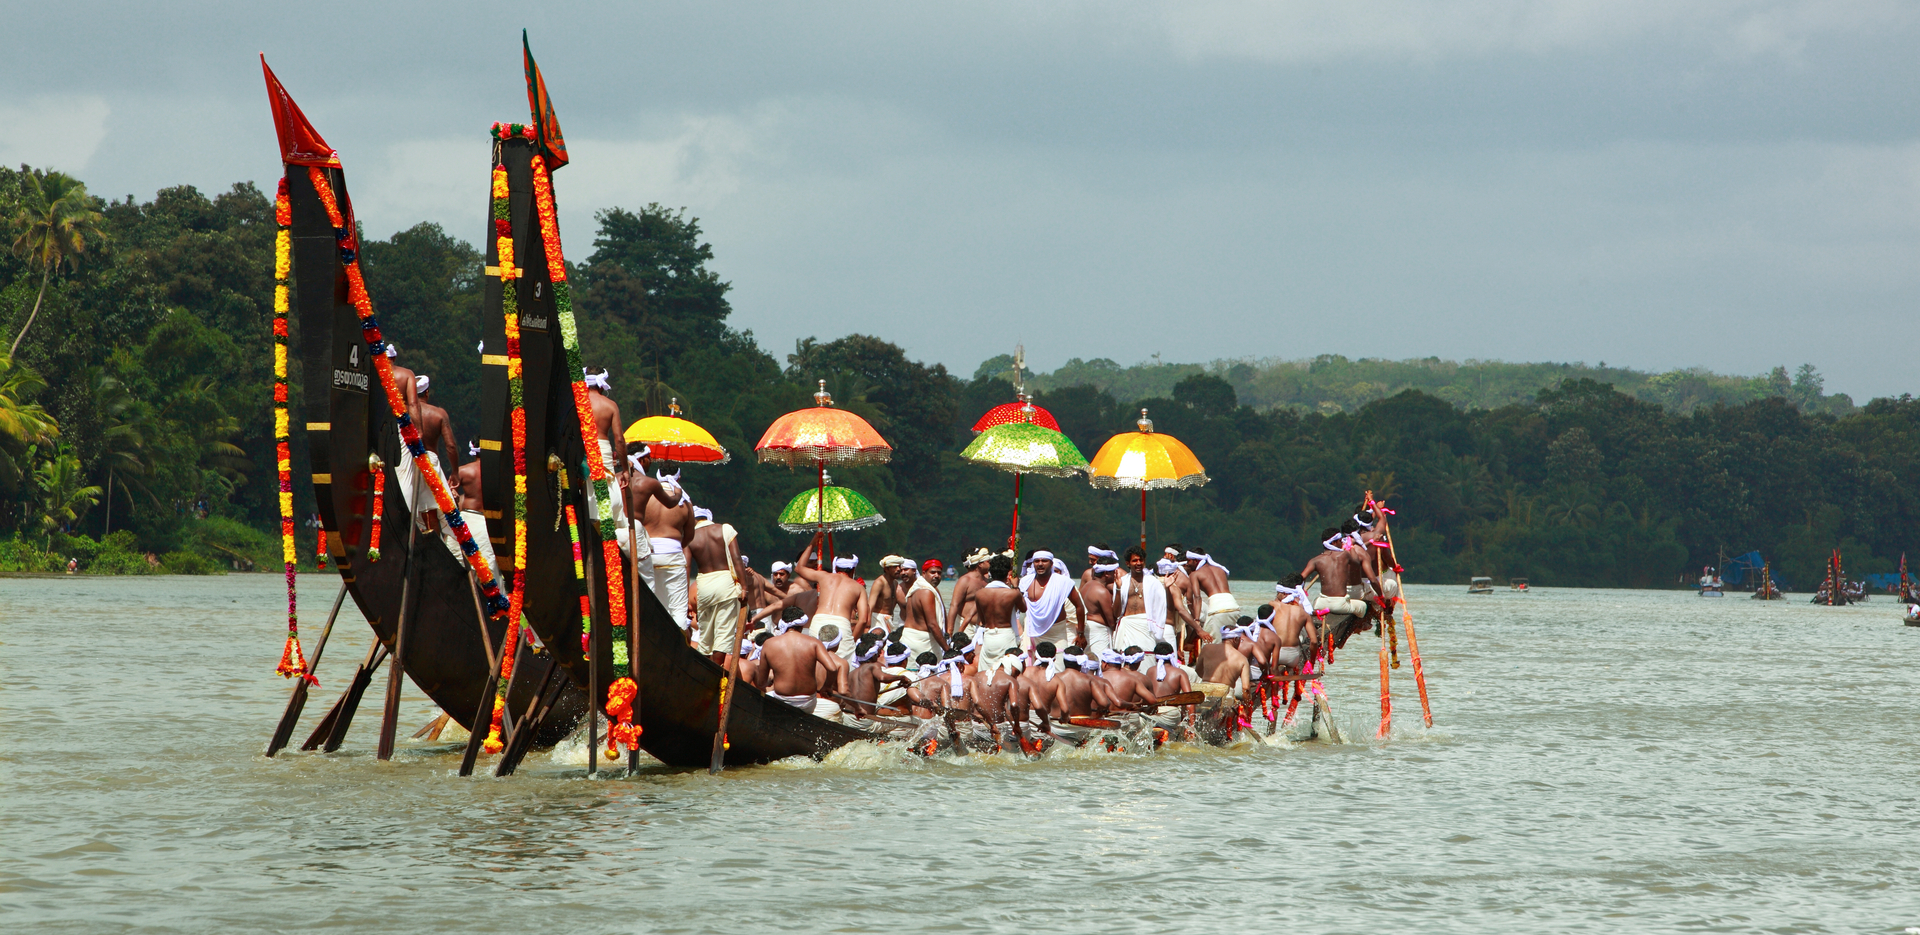 boat race in kerala